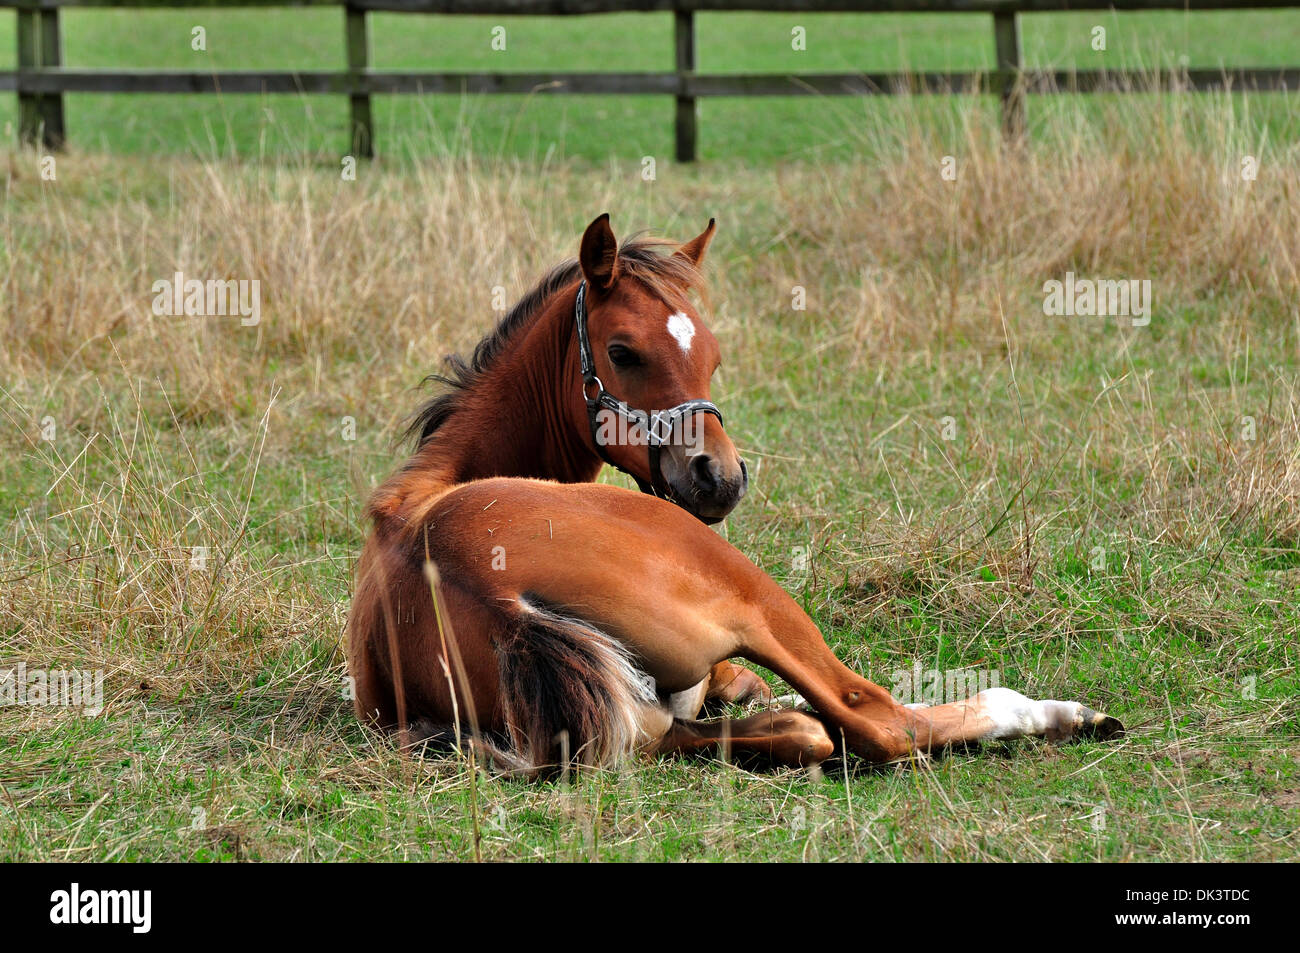 Chestnut Arab foal lying down in a grassy field Stock Photo